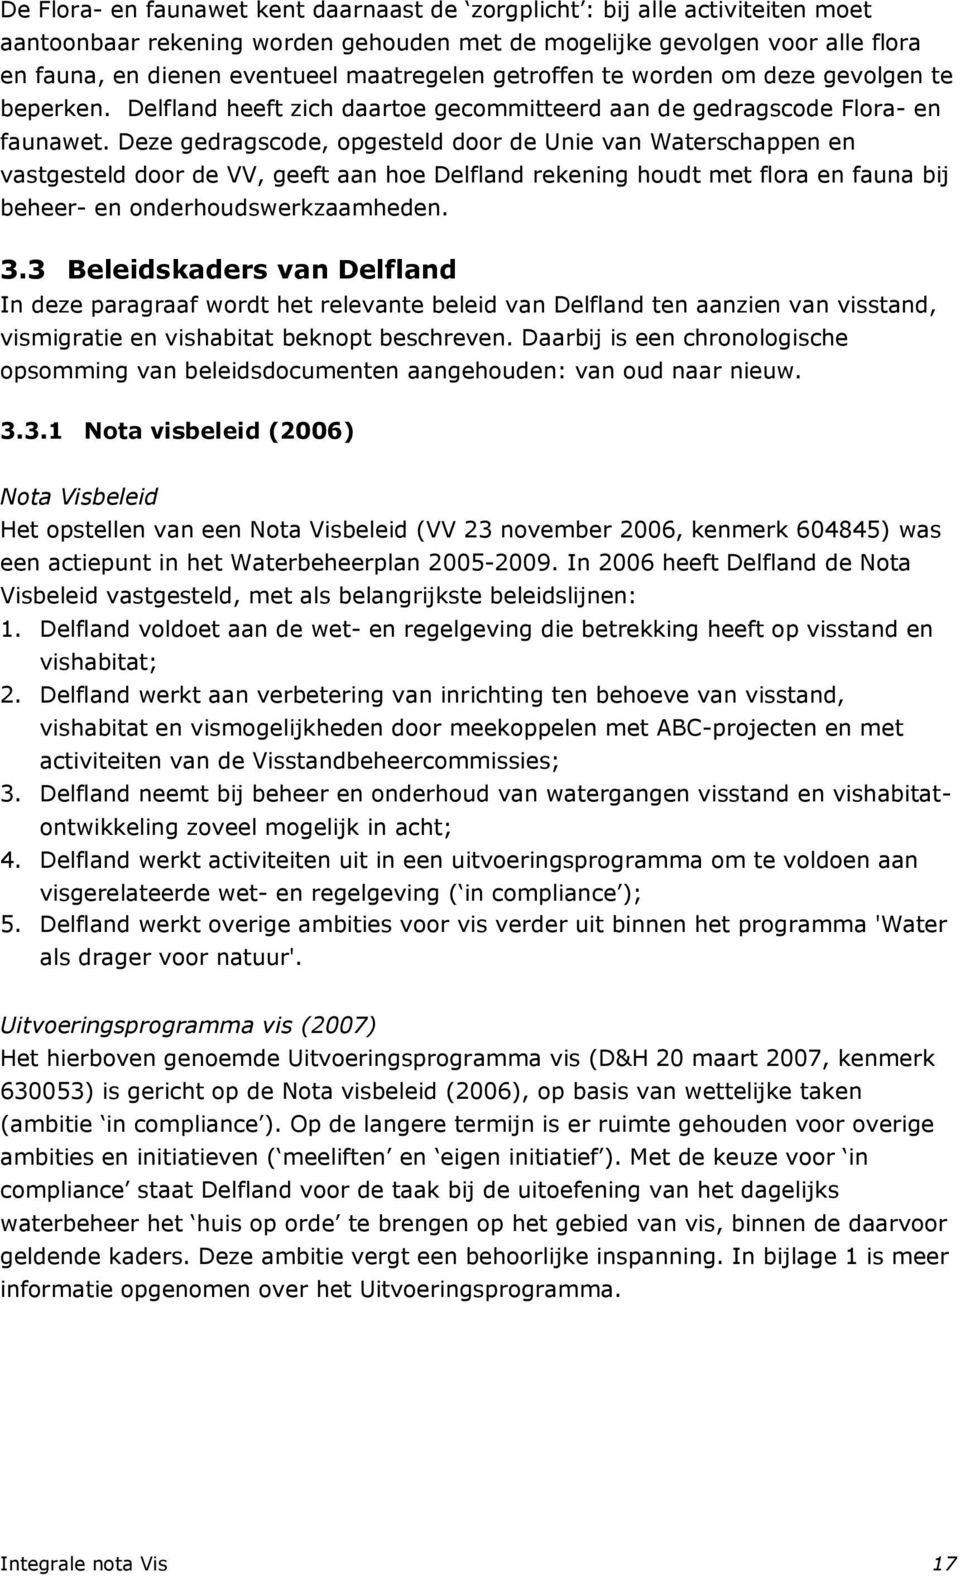 Deze gedragscode, opgesteld door de Unie van Waterschappen en vastgesteld door de VV, geeft aan hoe Delfland rekening houdt met flora en fauna bij beheer- en onderhoudswerkzaamheden. 3.